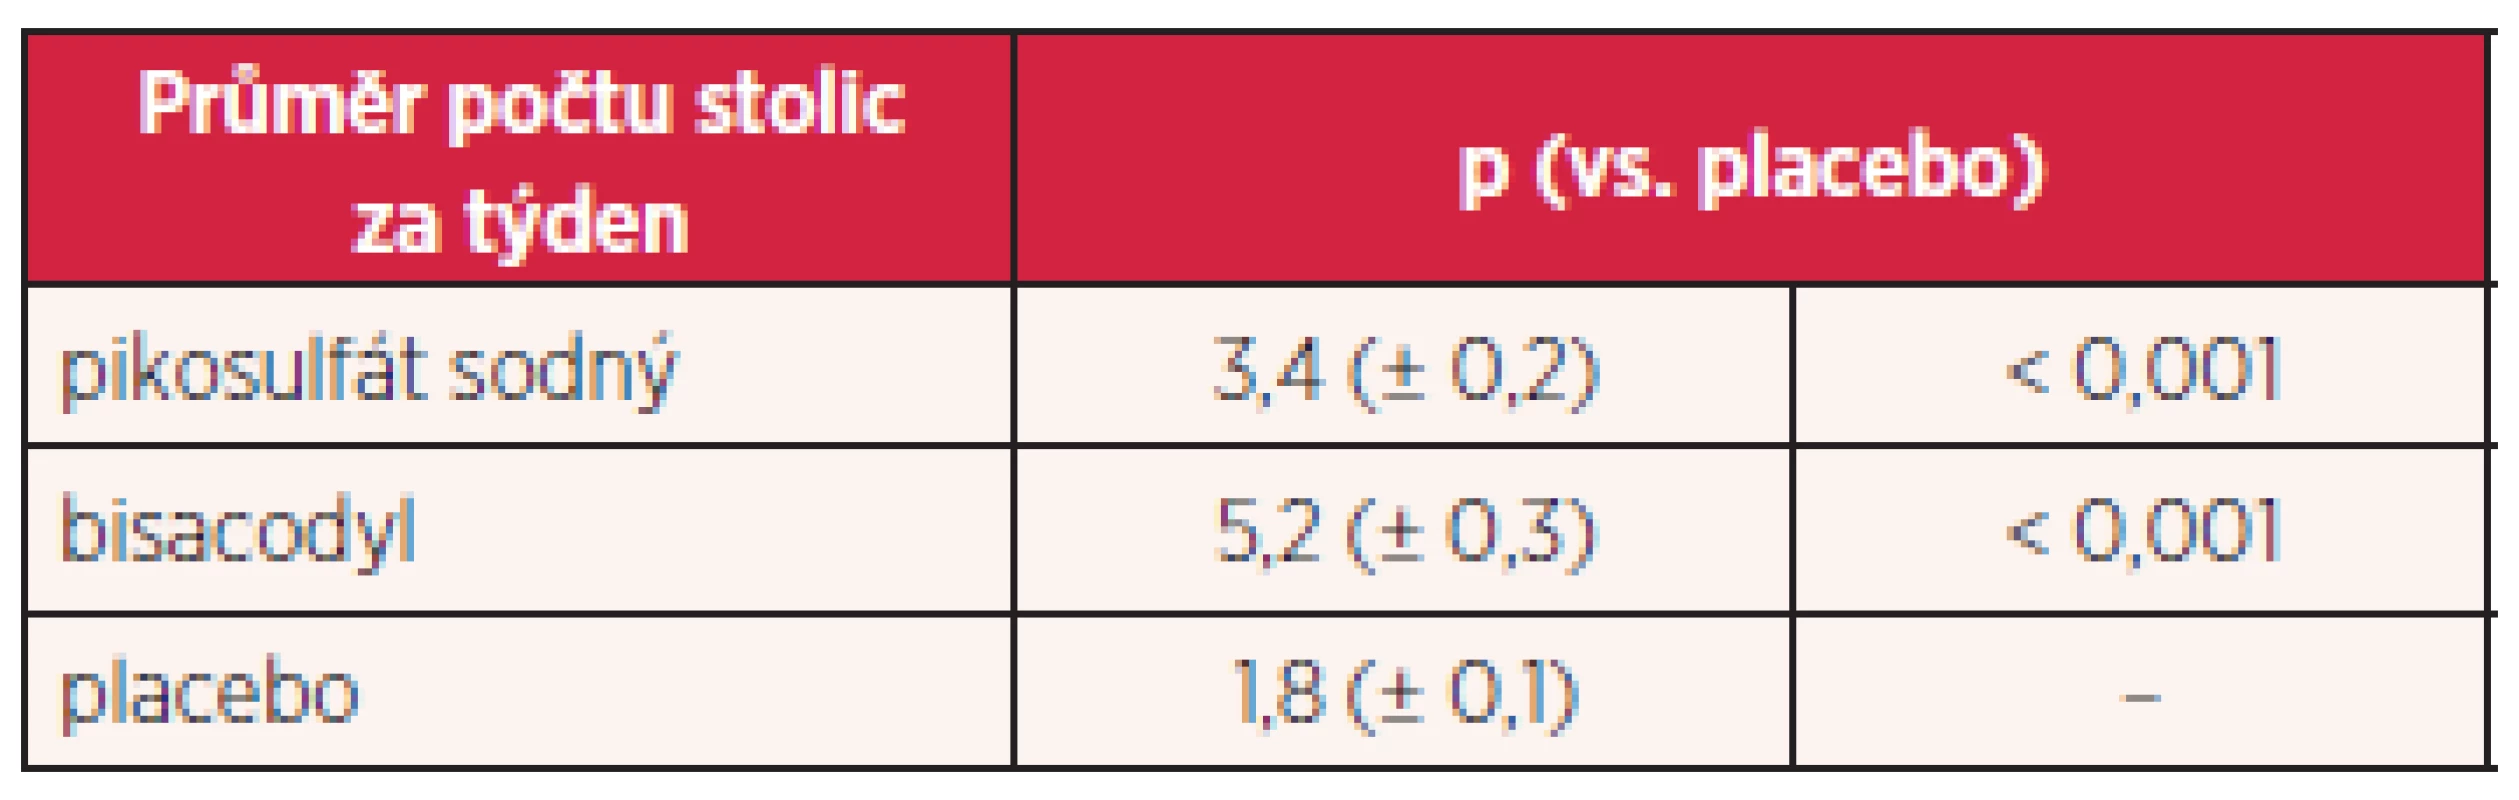 Účinnost pikosulfátu sodného a bisacodylu ve srovnání s placebem (8, 9)